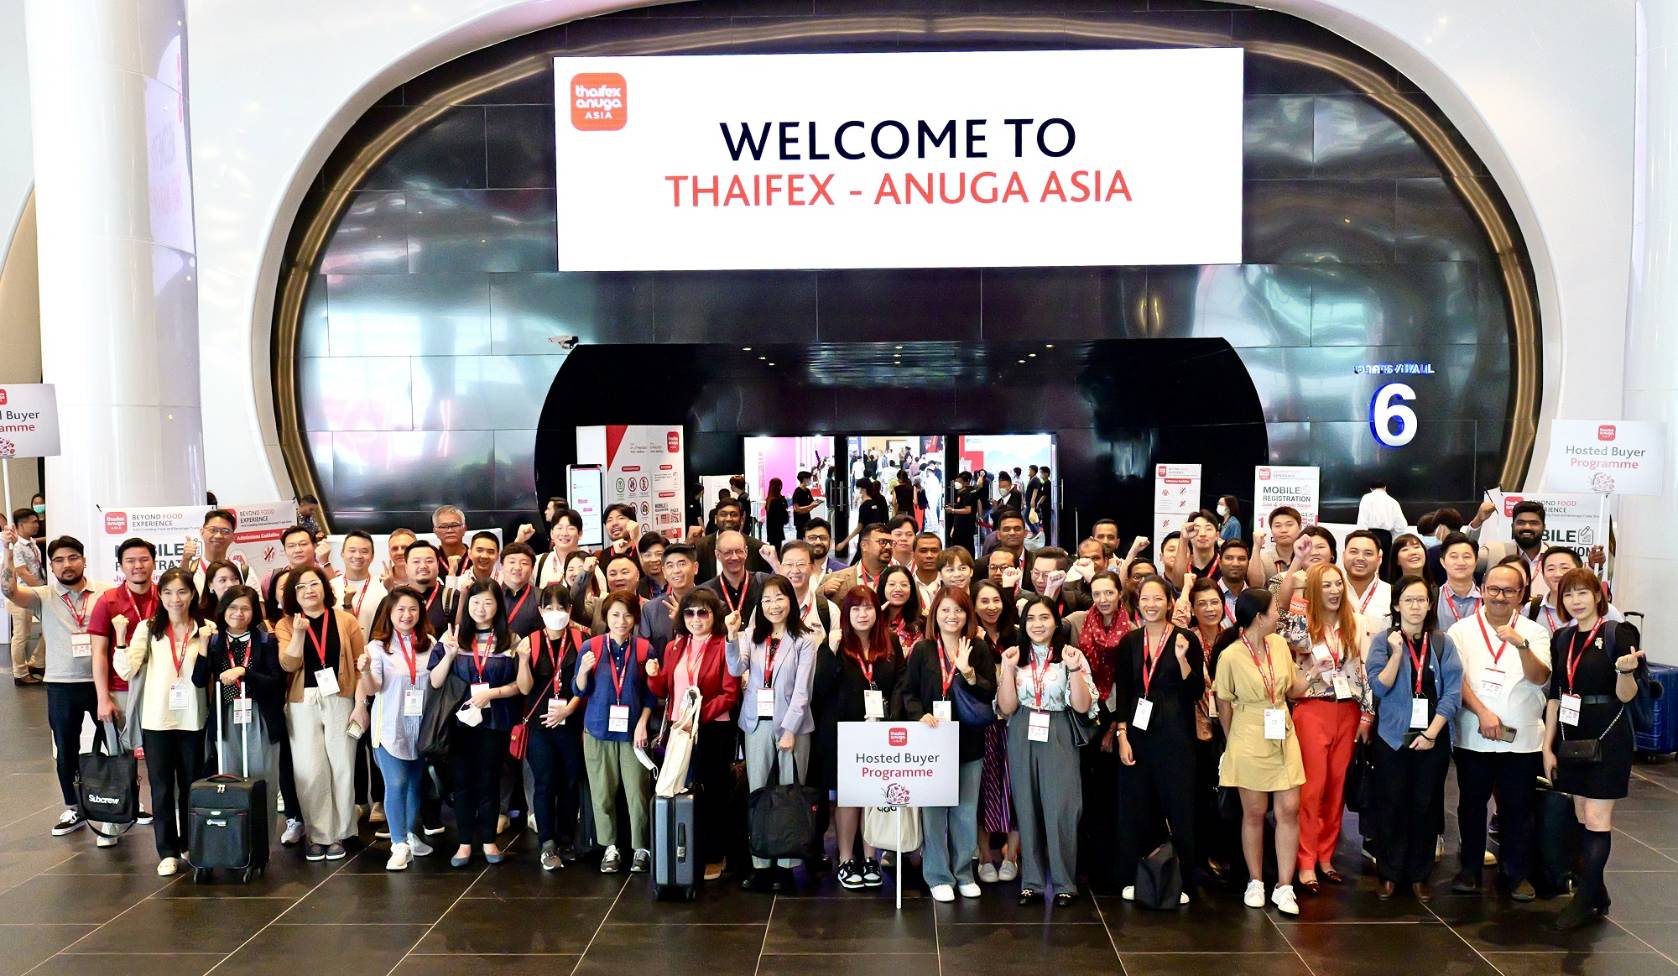 พบประสบการณ์ใหม่ๆ ในงานแสดงสินค้าอาหารและเครื่องดืมระดับโลก“THAIFEX - Anuga Asia